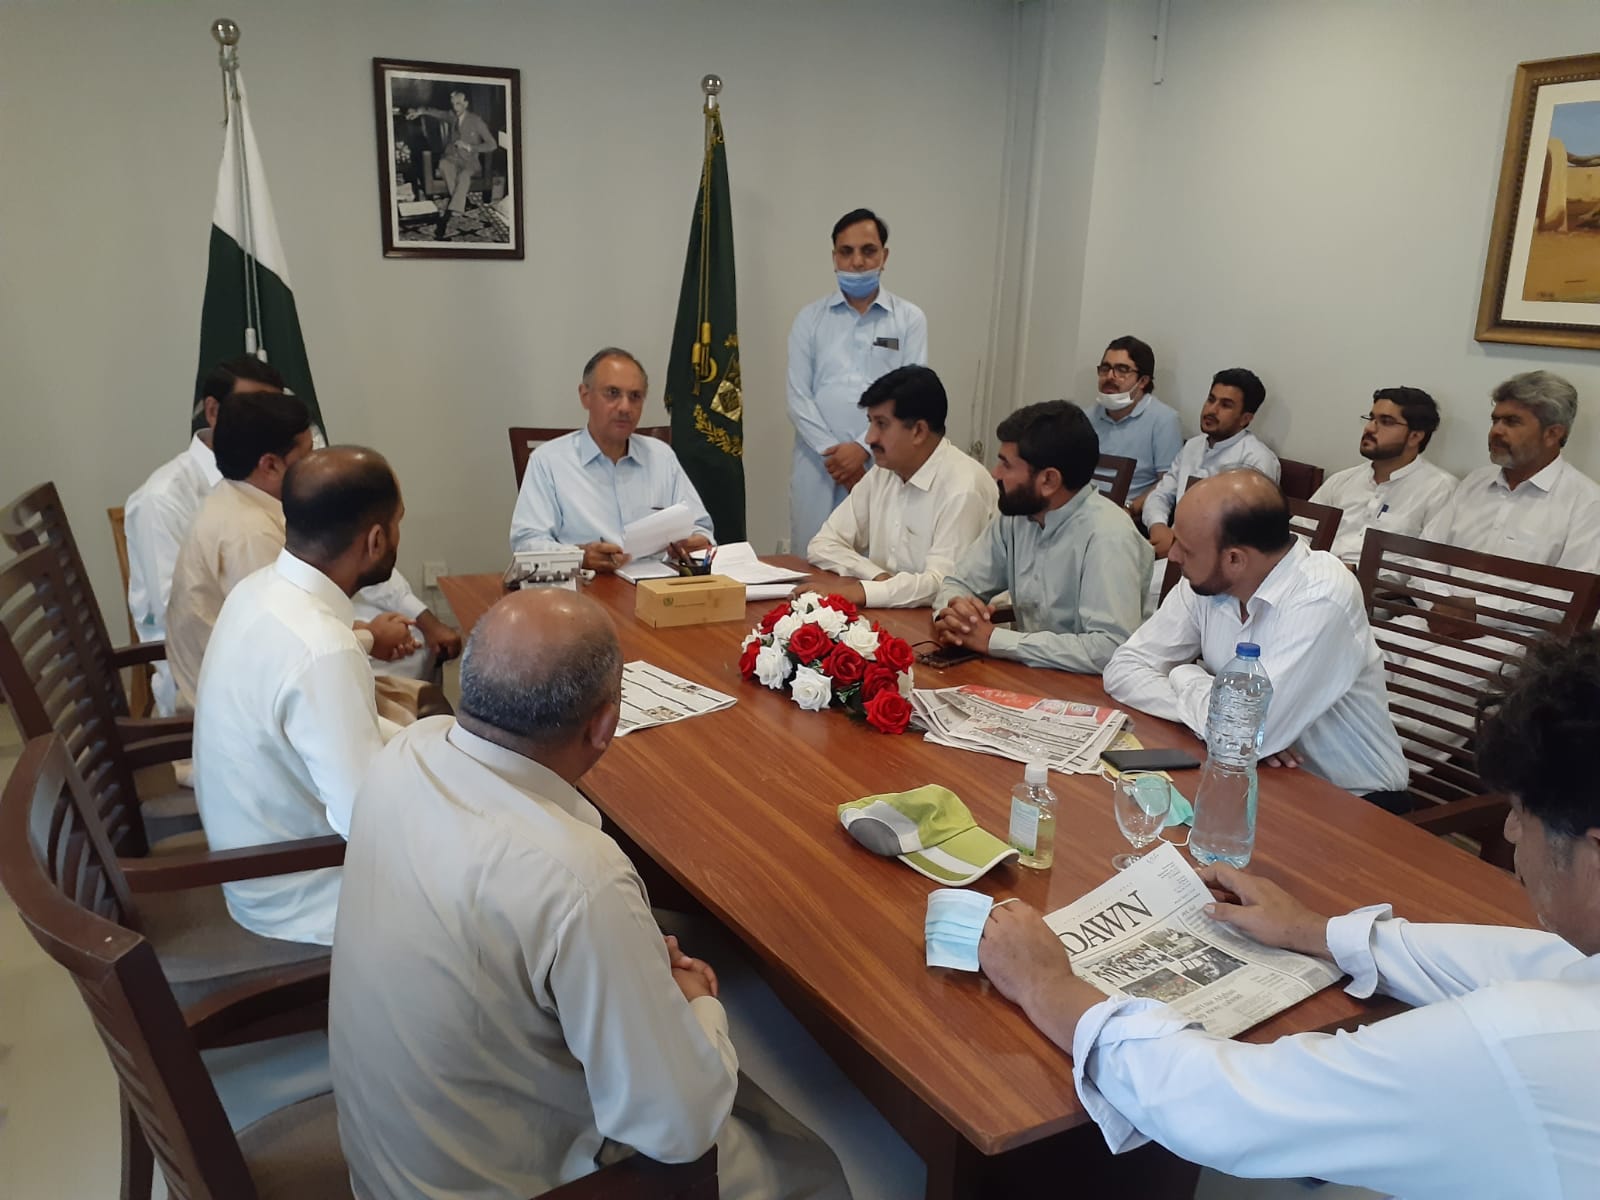 وفاقی وزیربرائے اقتصادی امورجناب عمرایوب خان اسلام آباد آفس میں حلقے کے مختلف علاقہ جات سے آنے والے سائلین سے ملاقات کرتے ہوئے  انکےمطالبات سن رہے ہیں۔